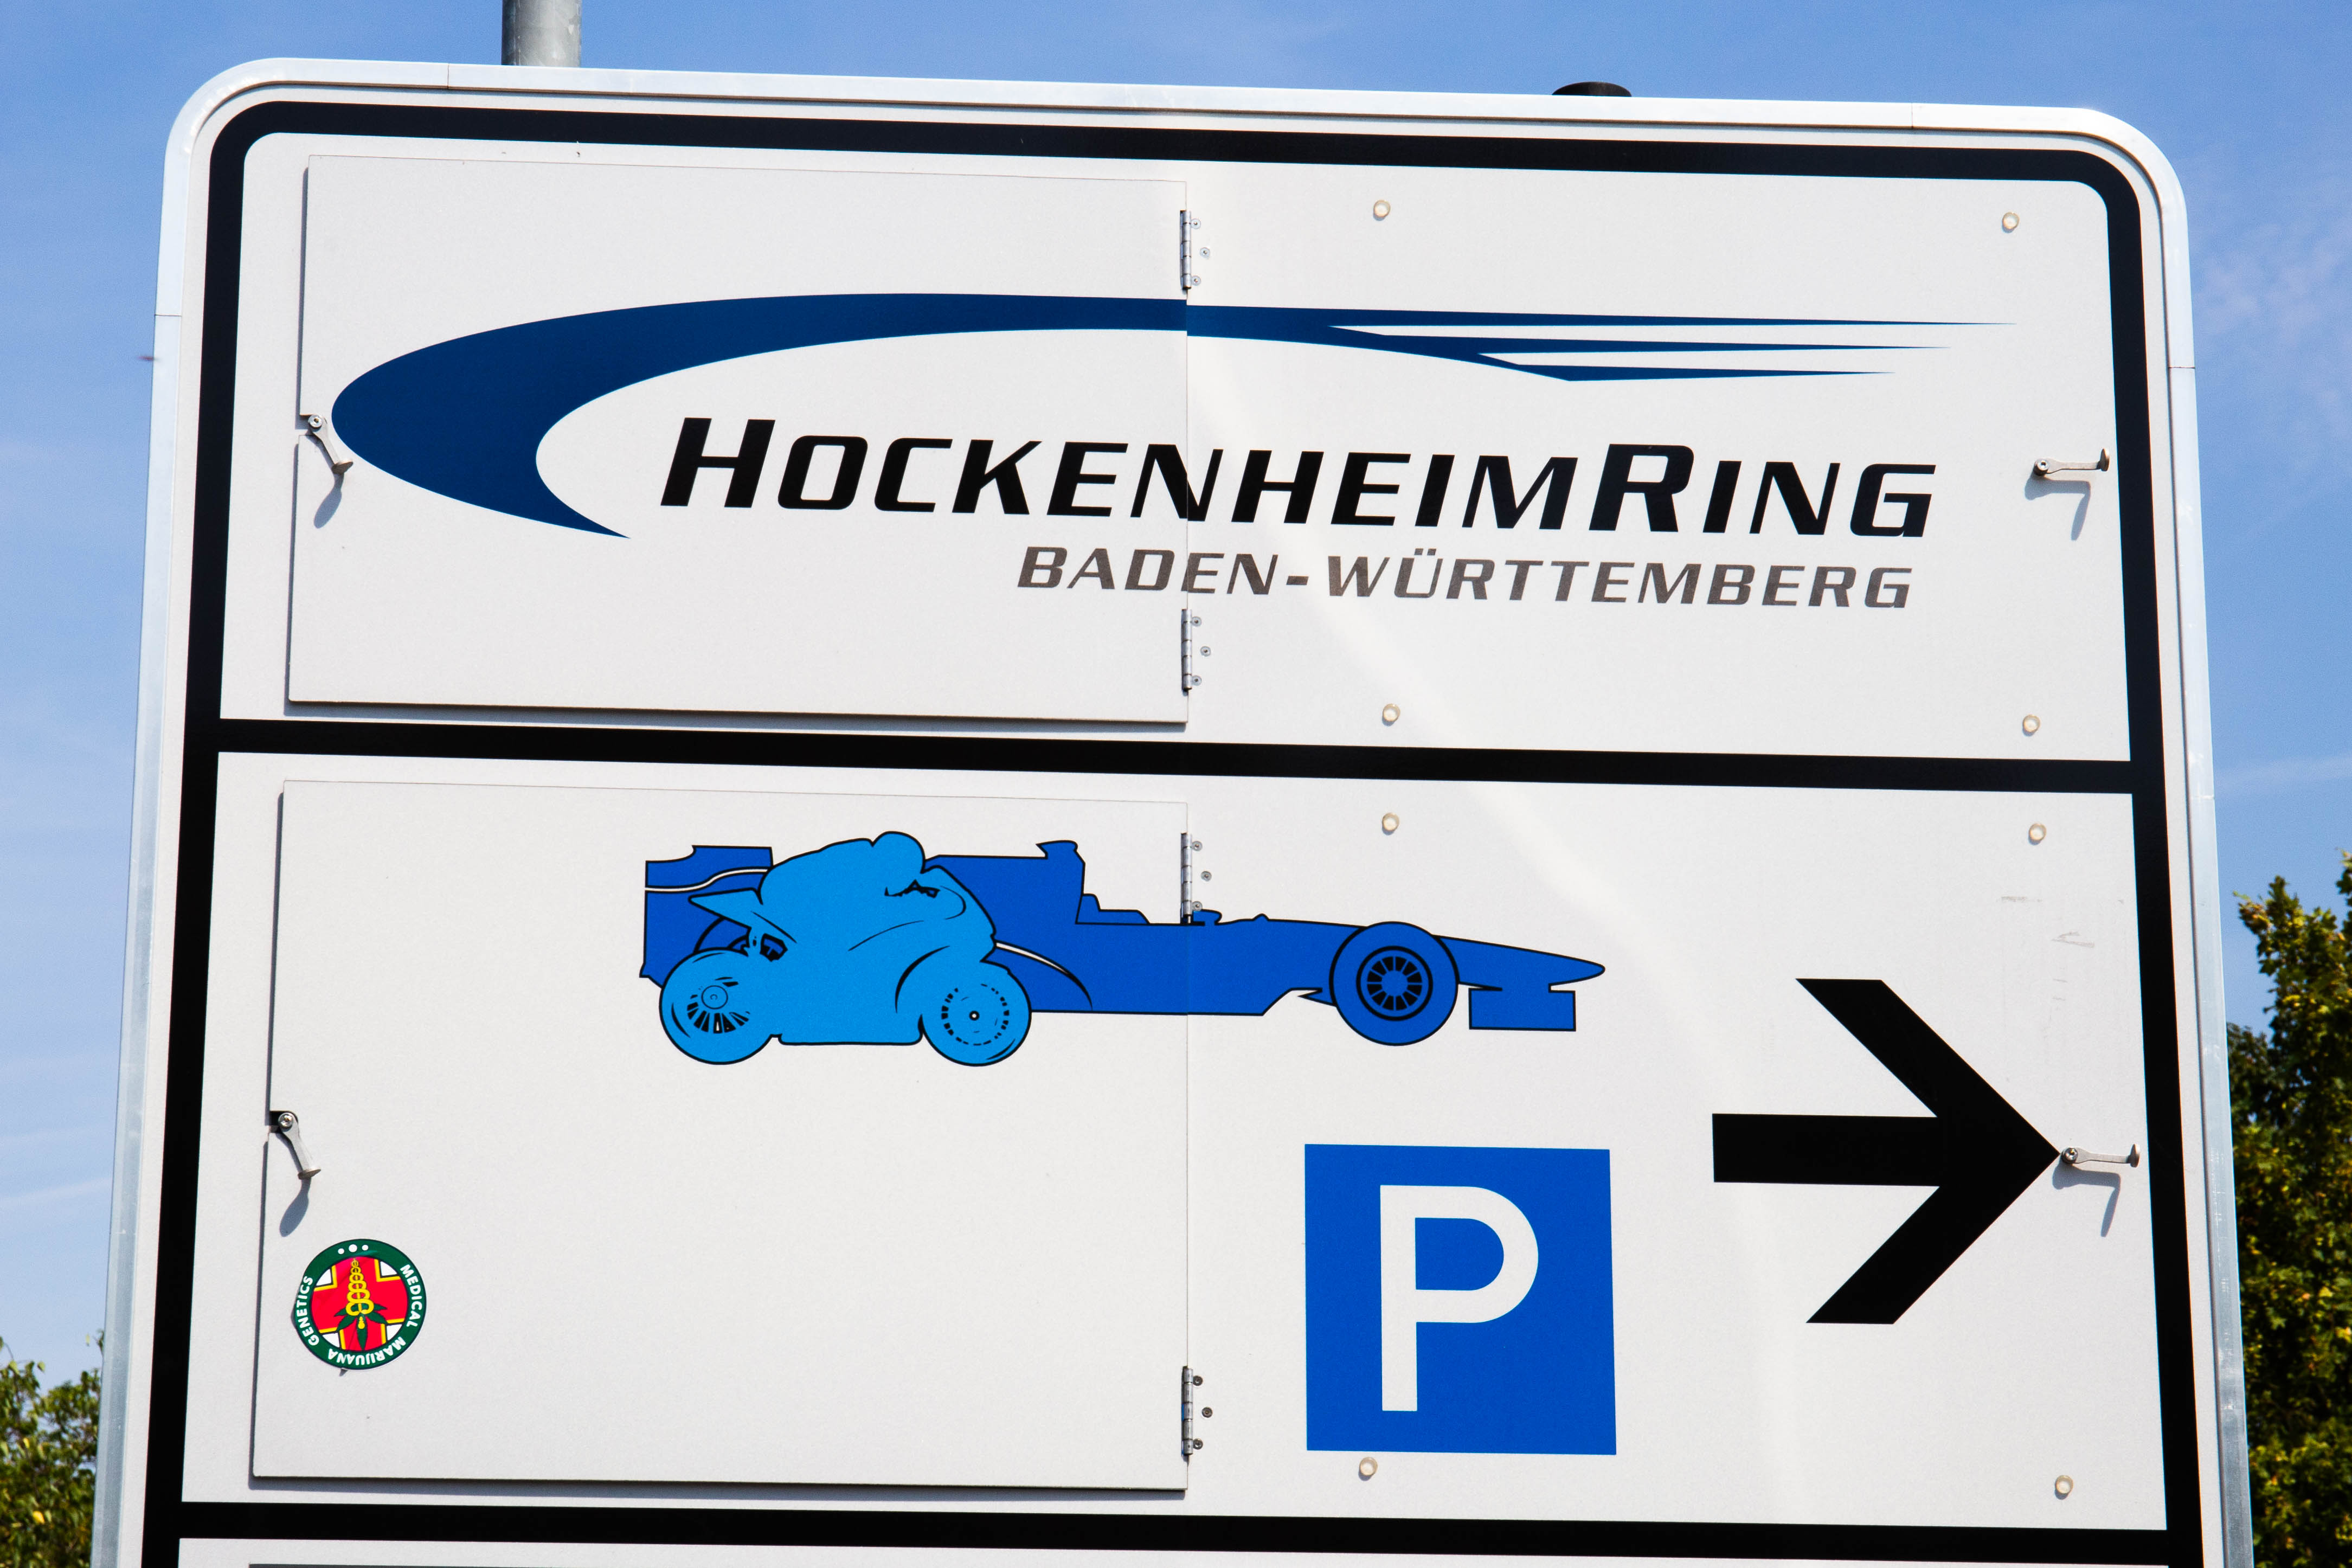 1 formel camping hockenheimring Formel 1